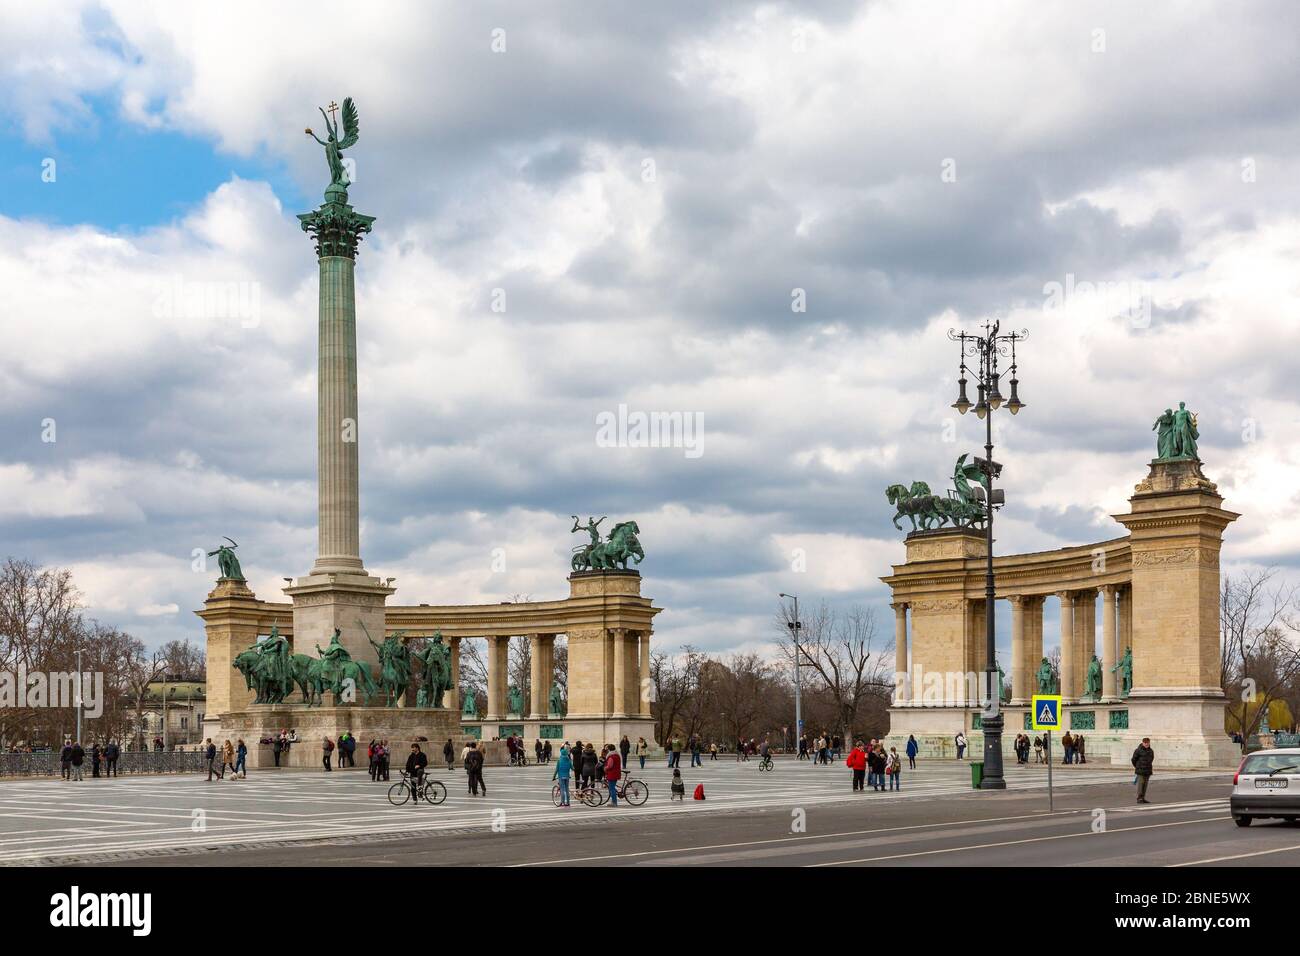 Budapest, Ungarn - 13. März 2016: Heldenplatz - Hauptplatz in Budapest. Ikonischer Statuenkomplex wichtiger ungarischer Nationalführer. Gruppen von Stockfoto